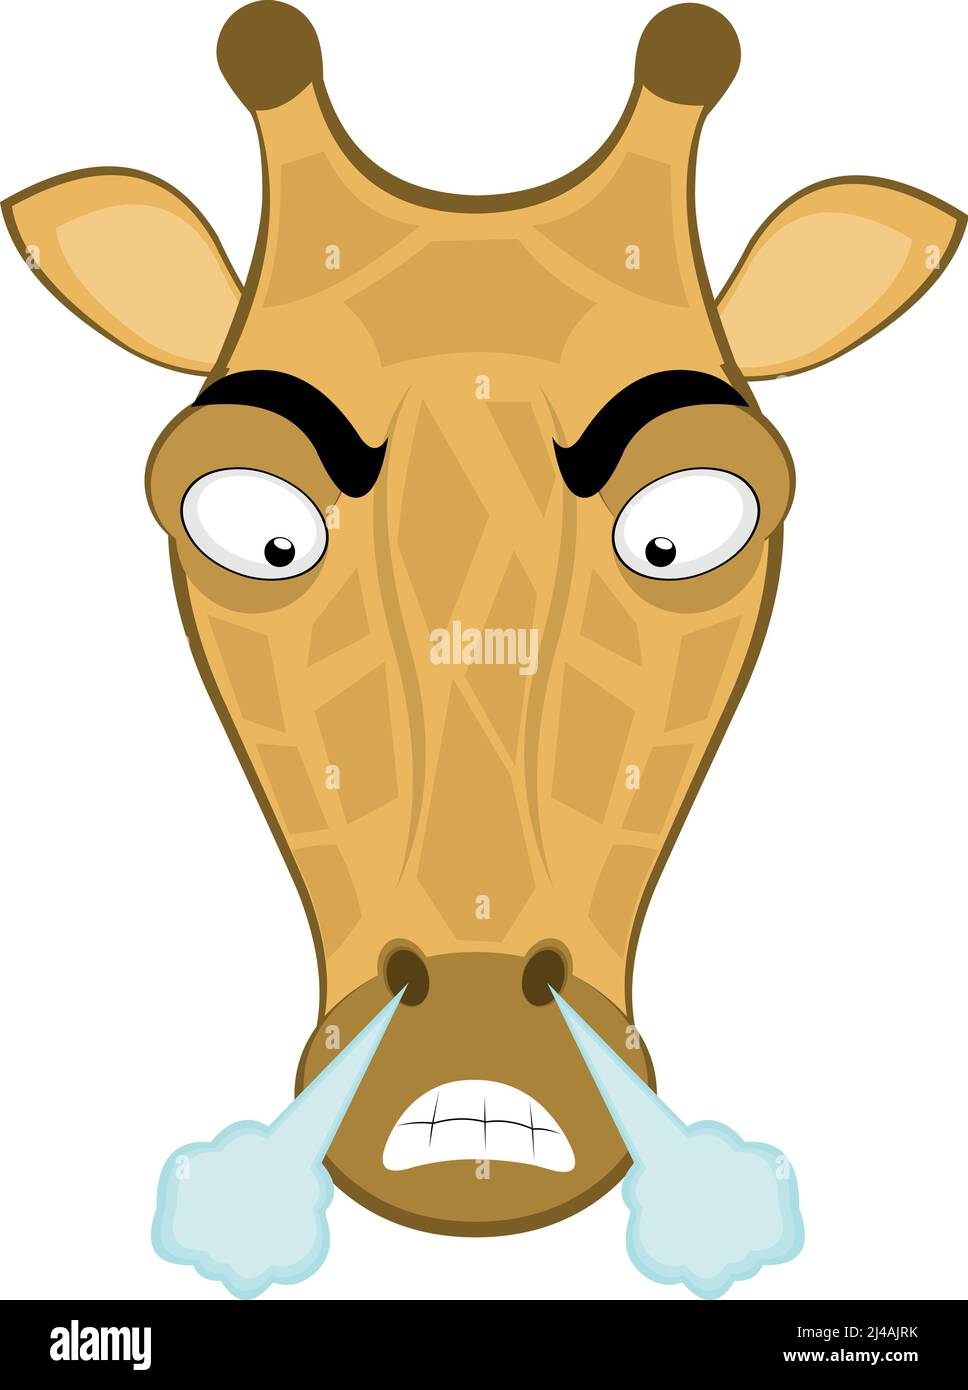 Vektor-Illustration des Gesichts einer Cartoon-Giraffe mit einem wütenden Ausdruck und Fuming Stock Vektor